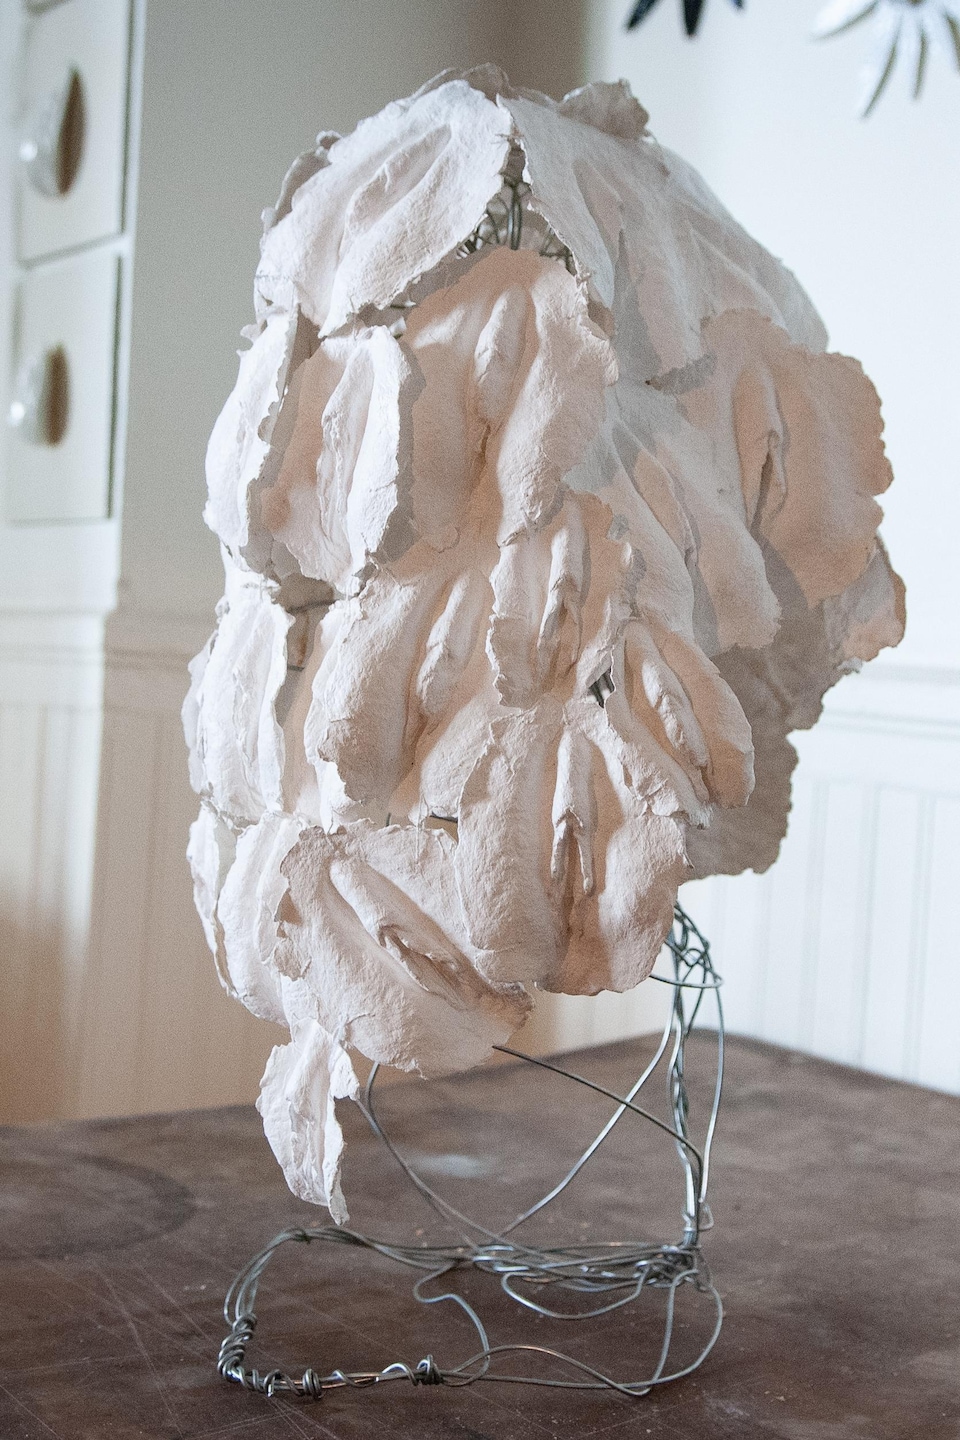 Un masque formé de petites vulves blanches attachées ensemble perché sur un support. 